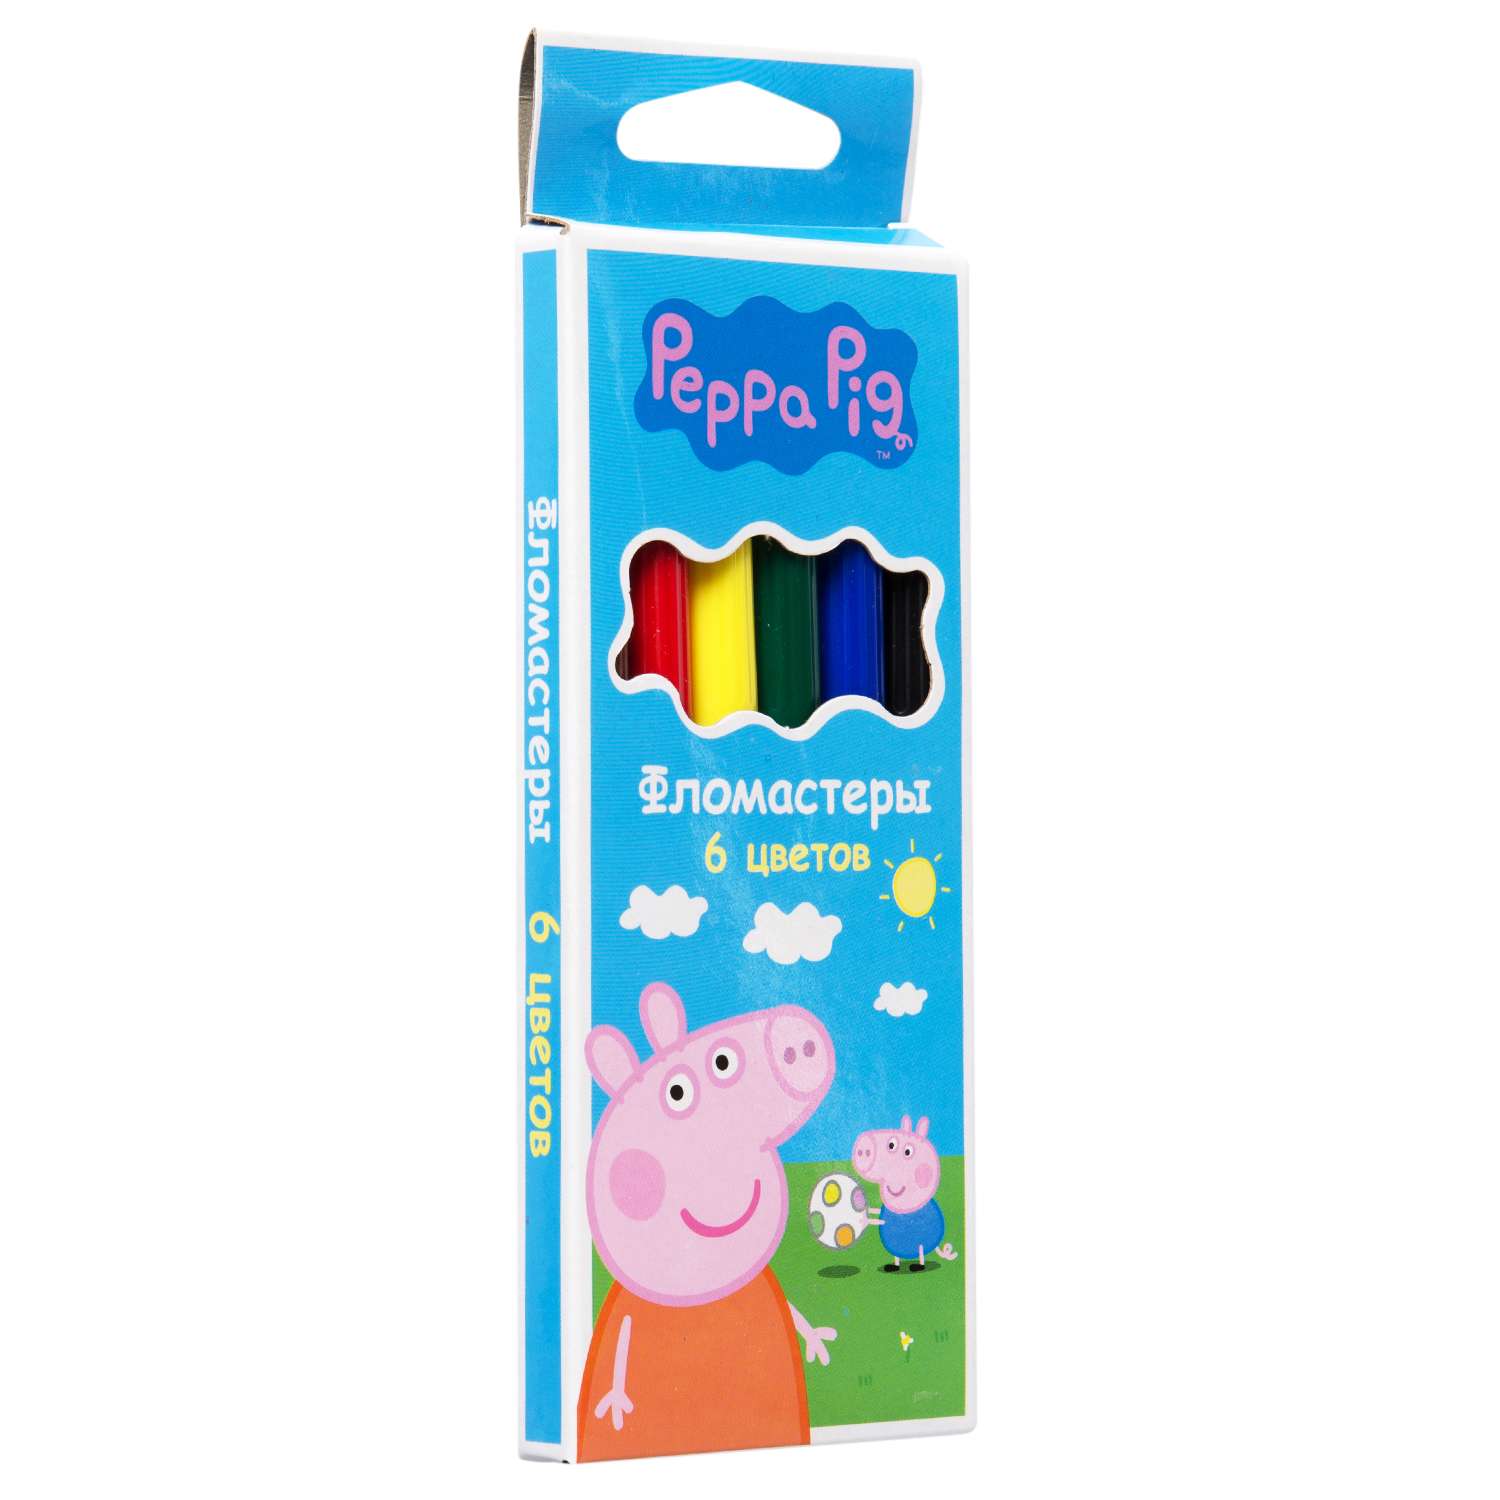 Фломастеры Росмэн Peppa Pig 6цветов 34027 - фото 2